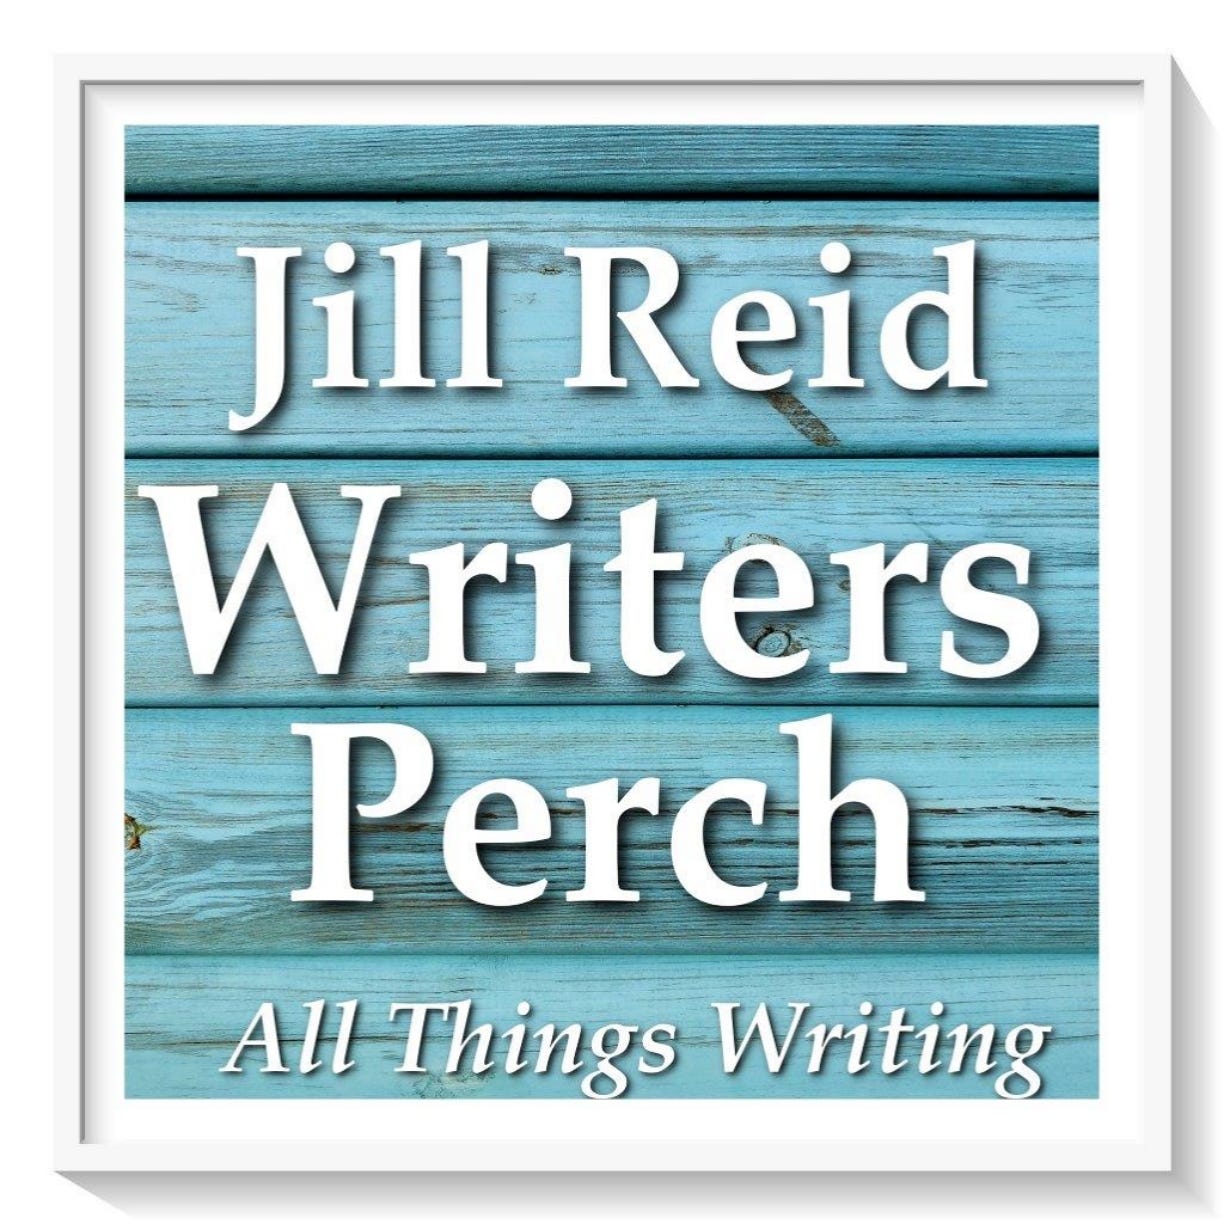 Writers Perch Newsletter by Jill Reid